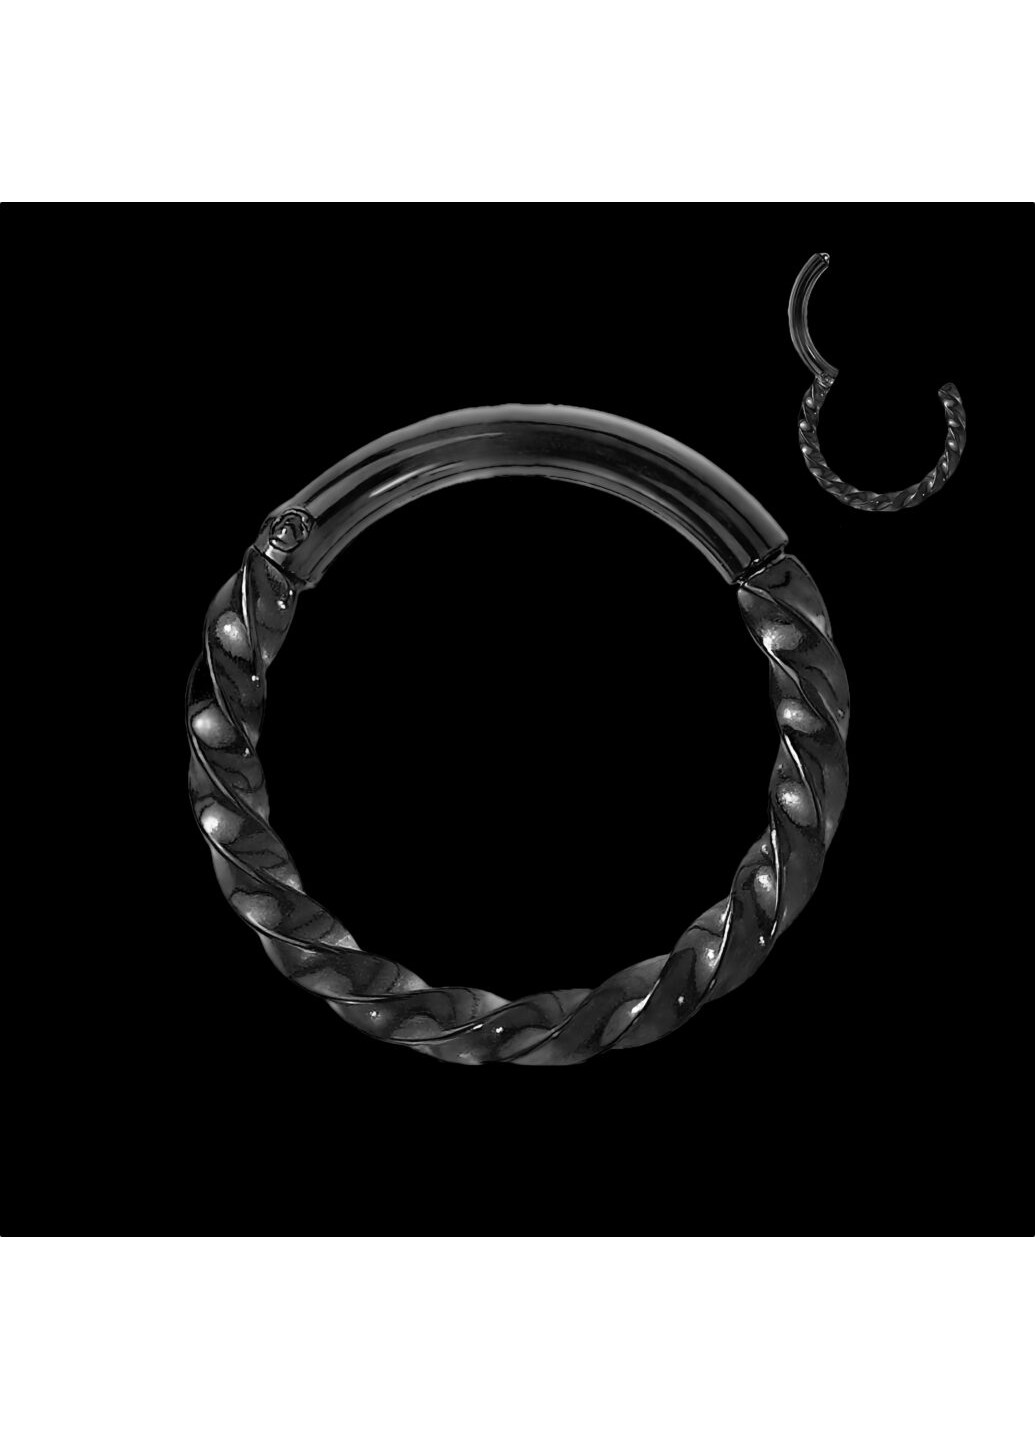 Кольцо кликер (спираль) из стали RH72 серьга для пирсинга септума носа, хряща уха, трагуса, хеликса, брови, губ цвет Spikes (260395440)